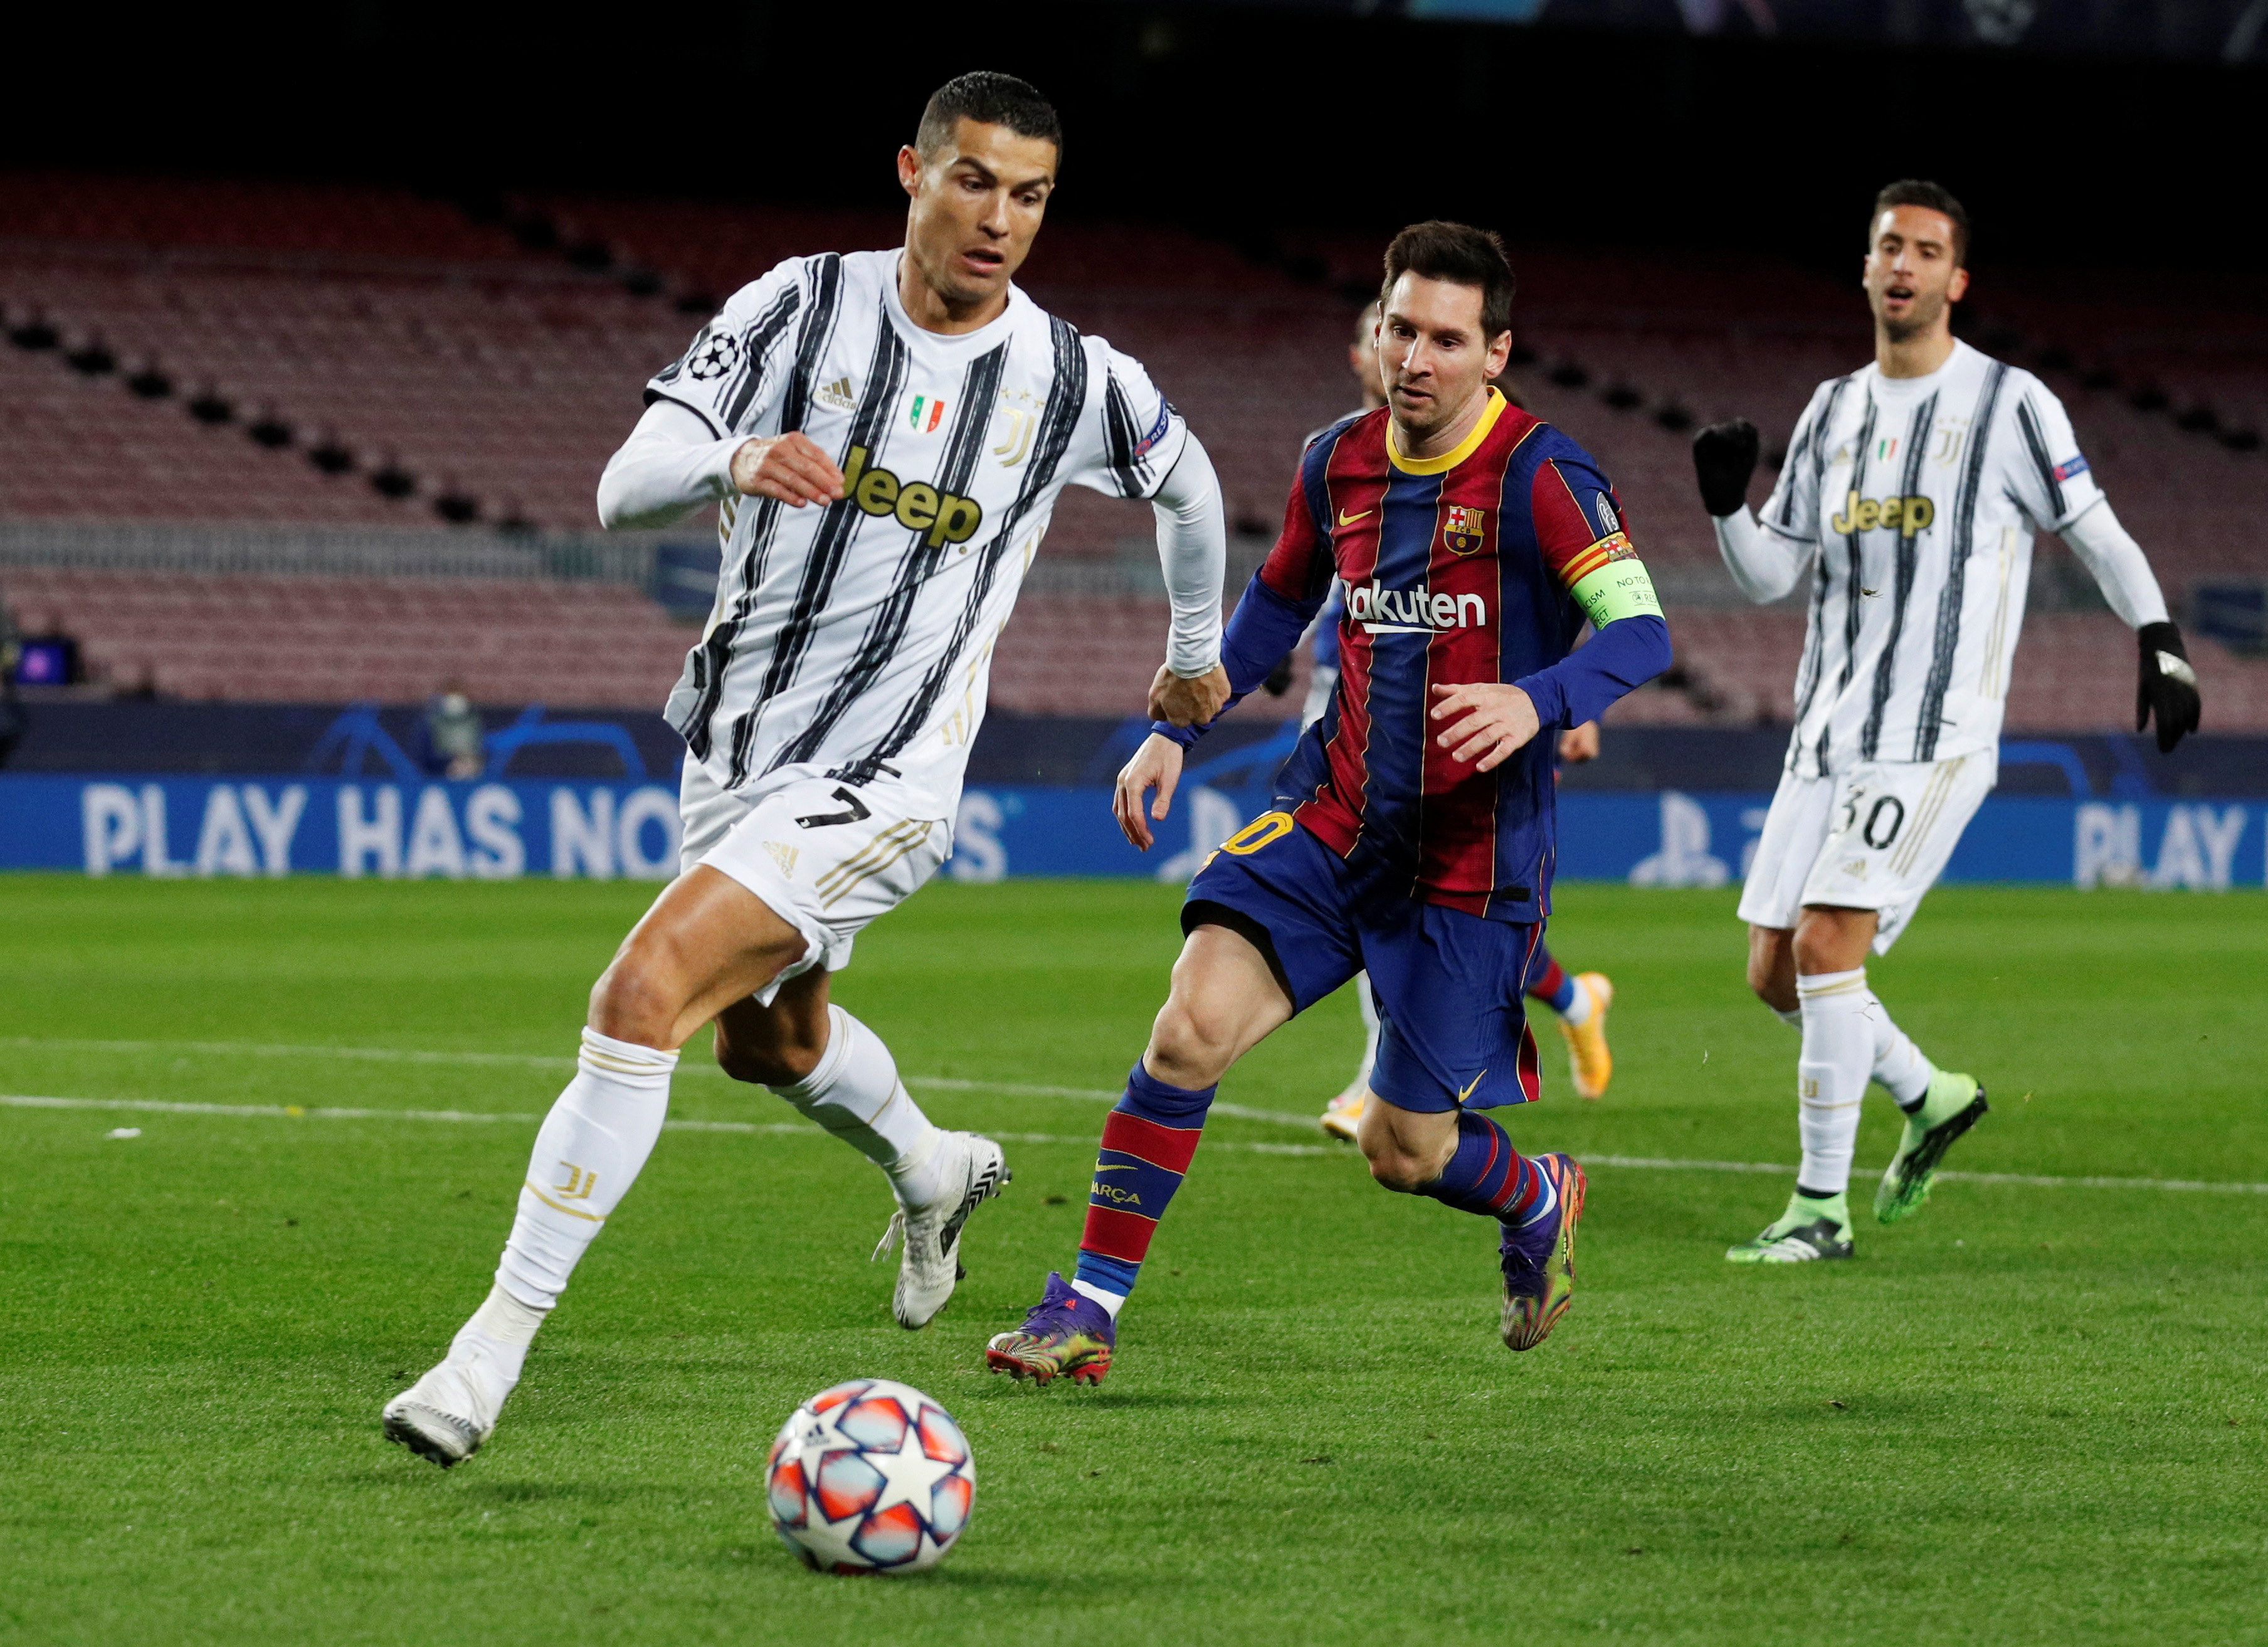 Messi vs. Ronaldo: The defining rivalry of the decade